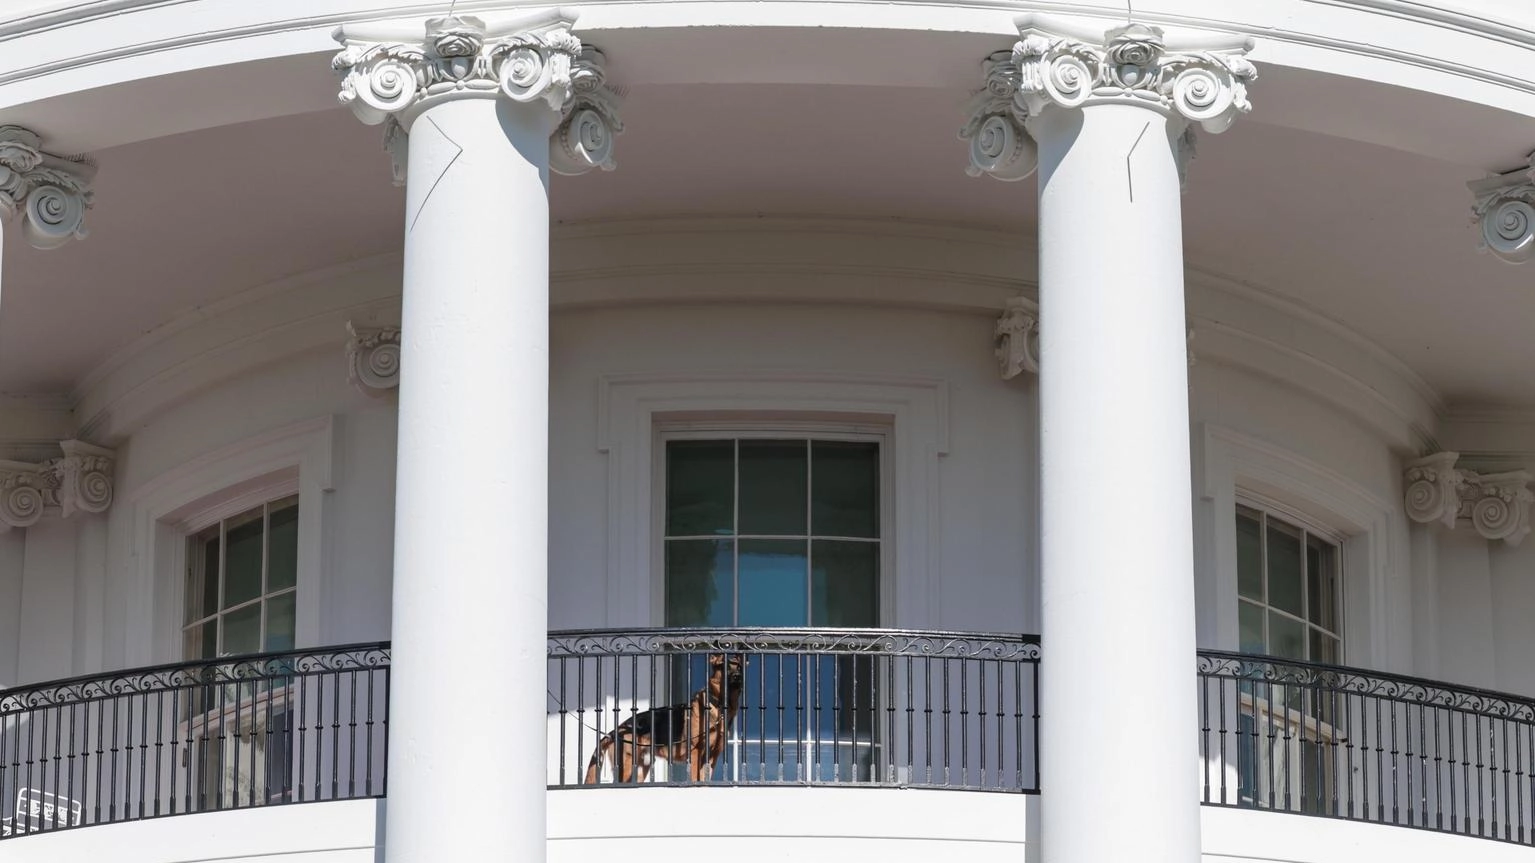 Un cane di Biden morde un altro agente del Secret Service